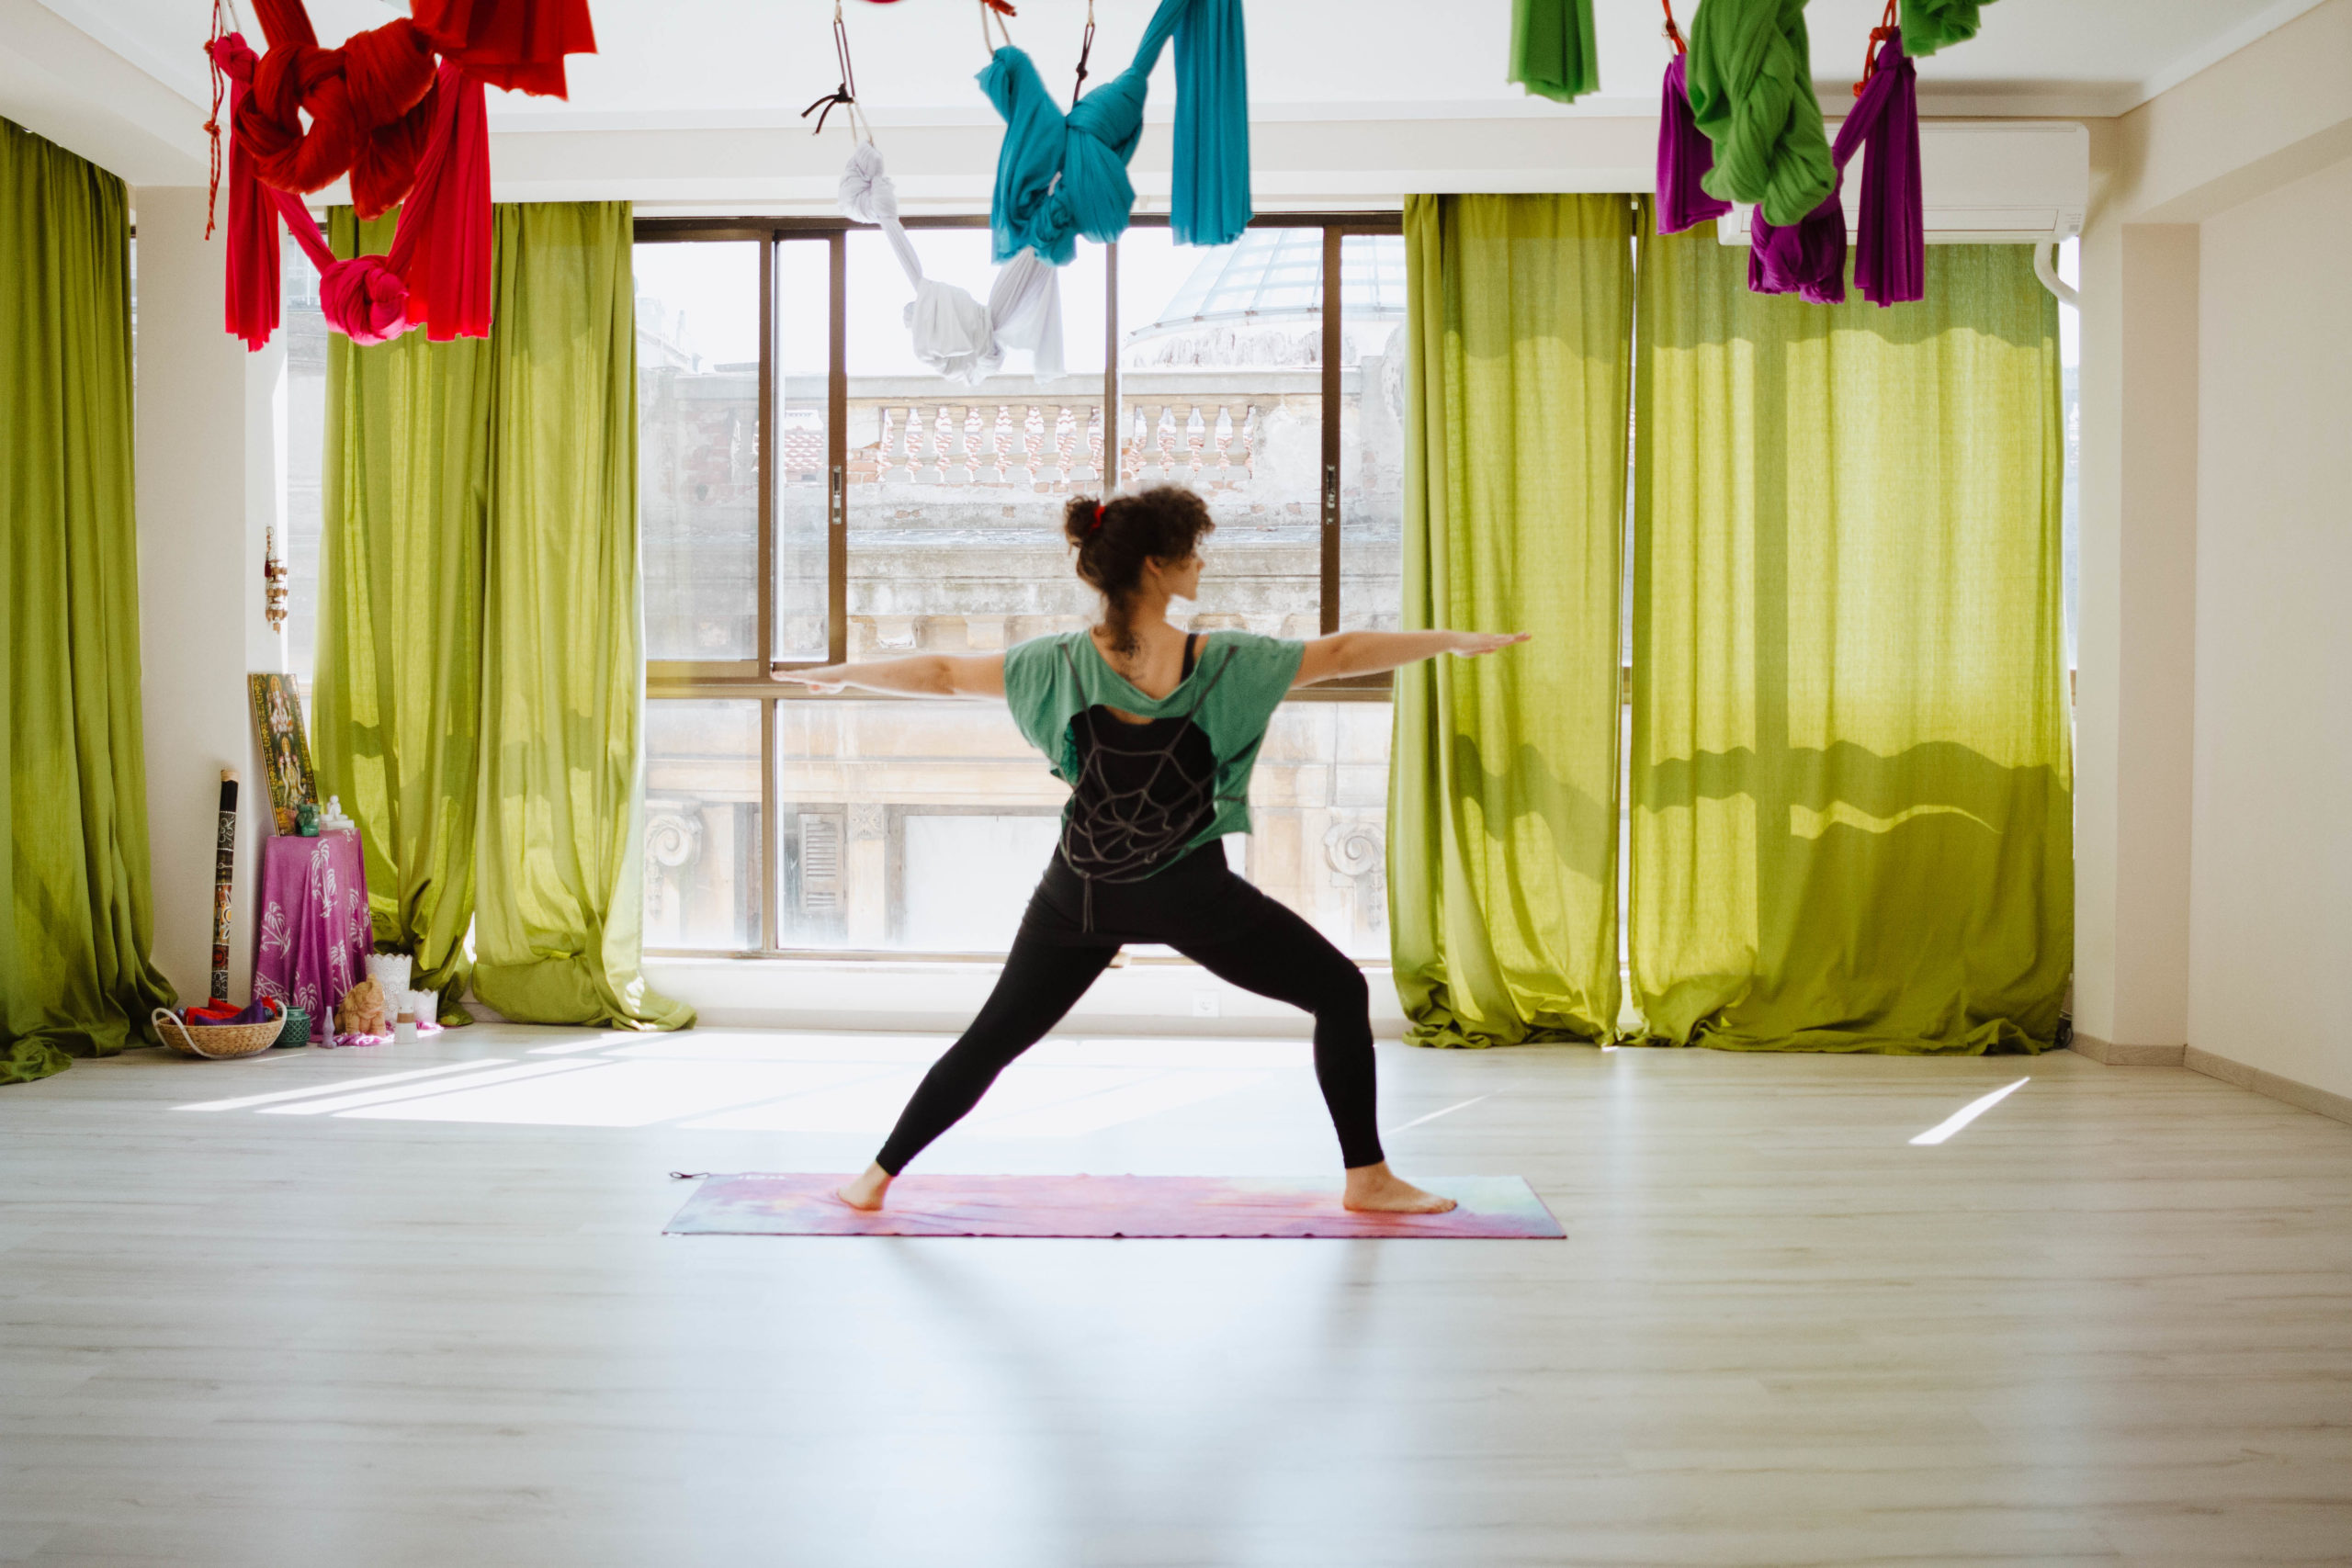 OM SHANTI Round Frame A320 - Welcome to Yoga Canada: Yoga School